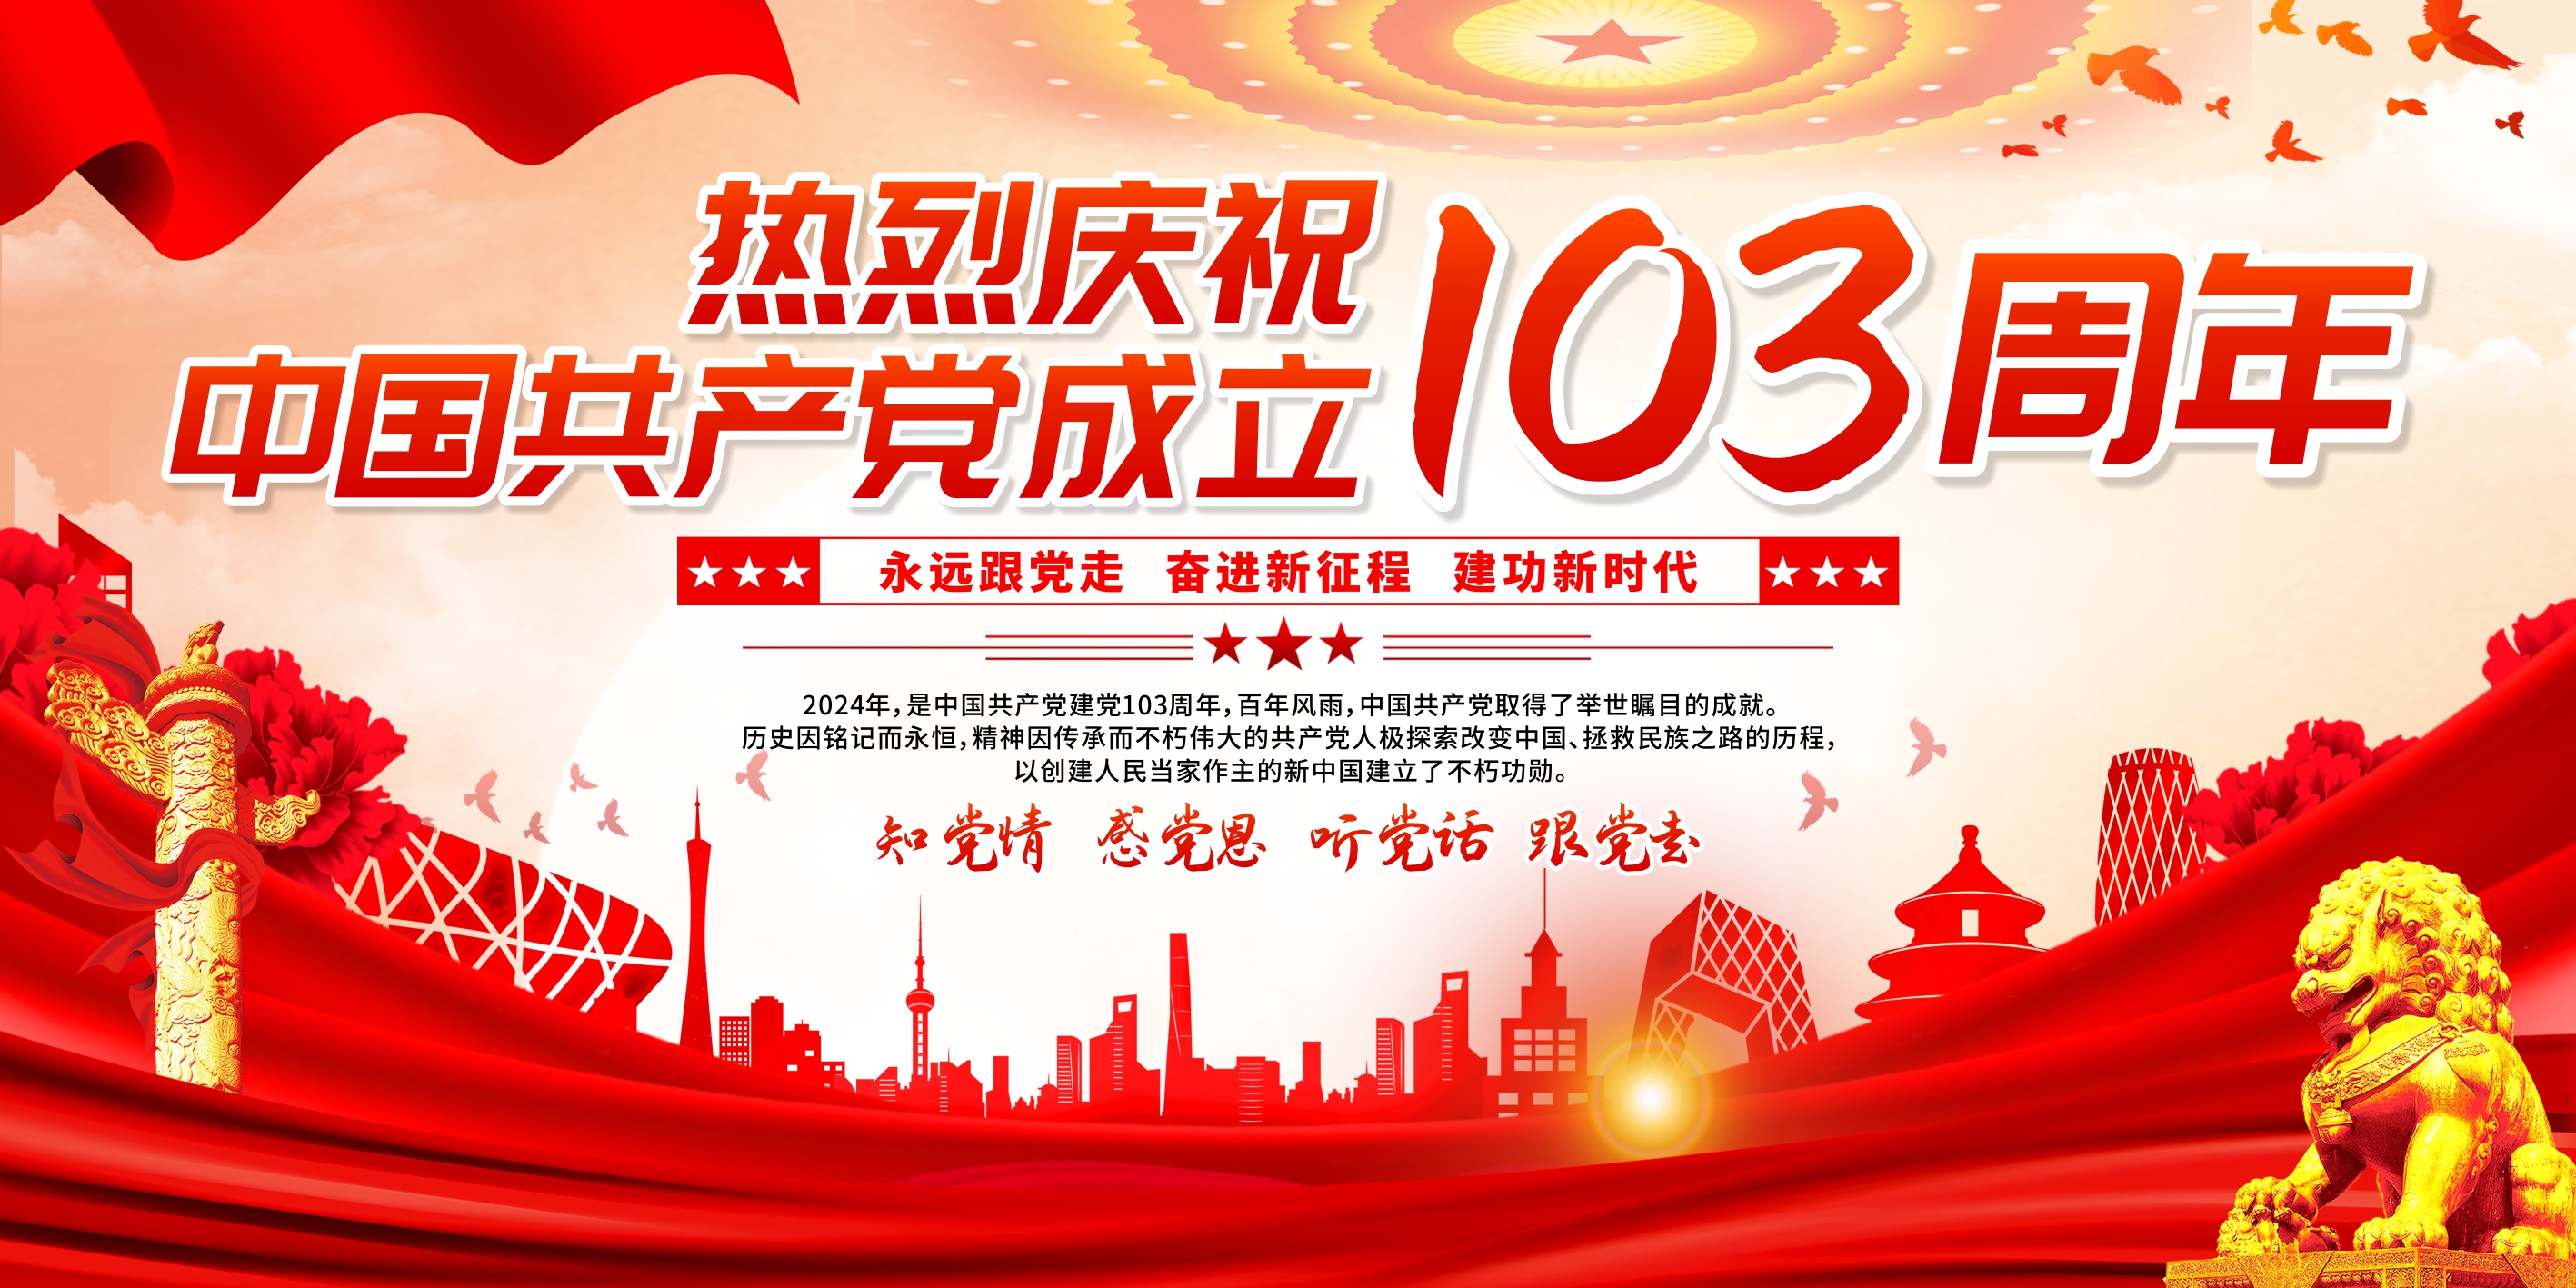 创意中国共产党成立103周